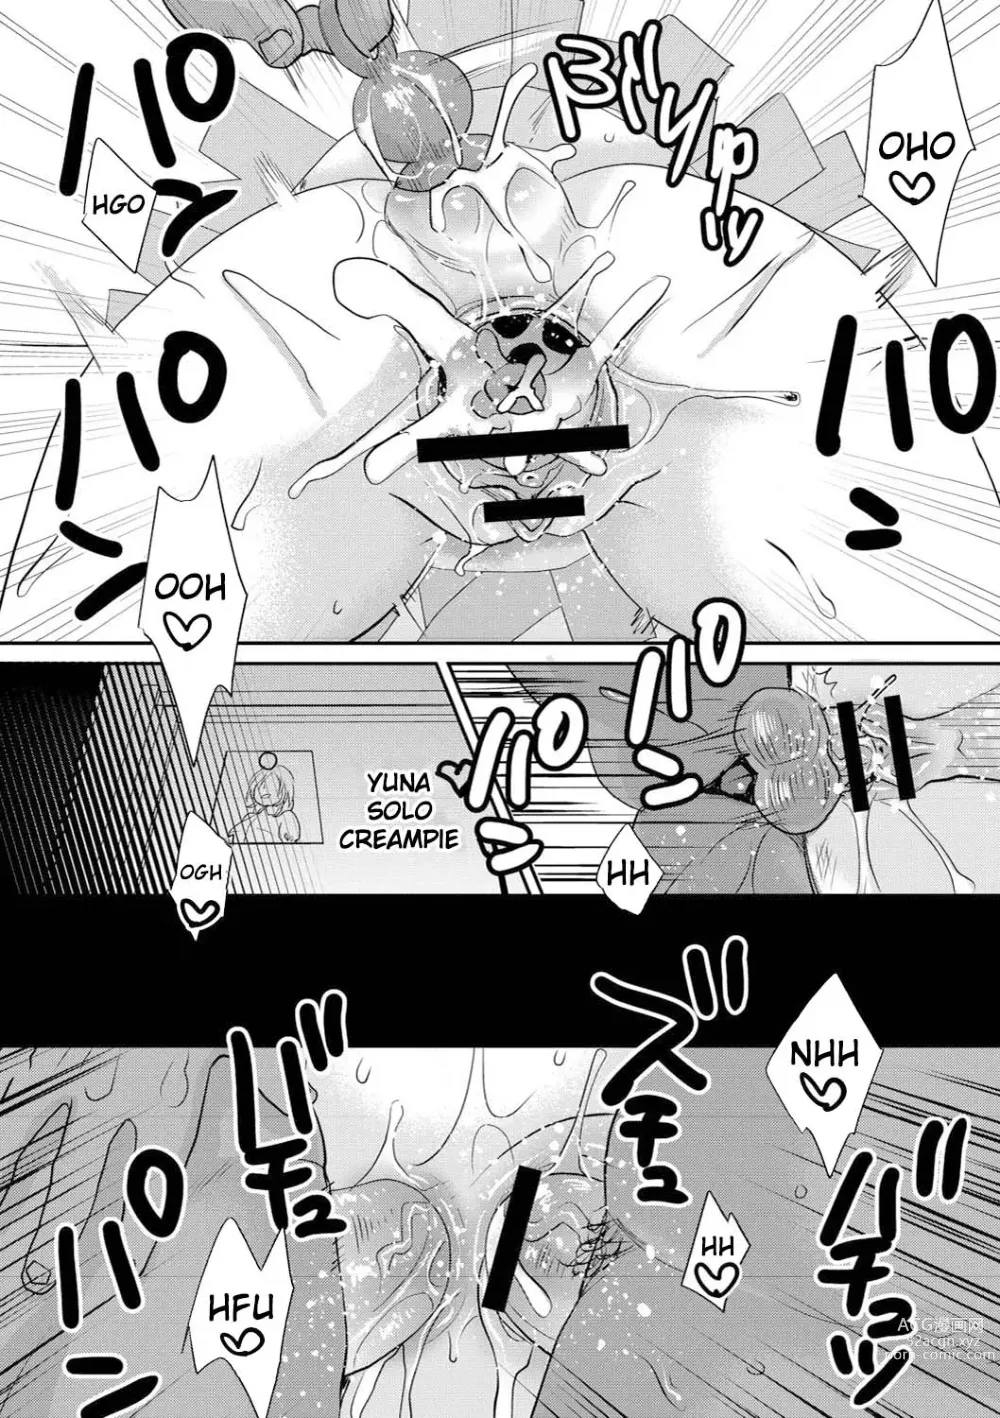 Page 191 of manga Sarasare Aidol